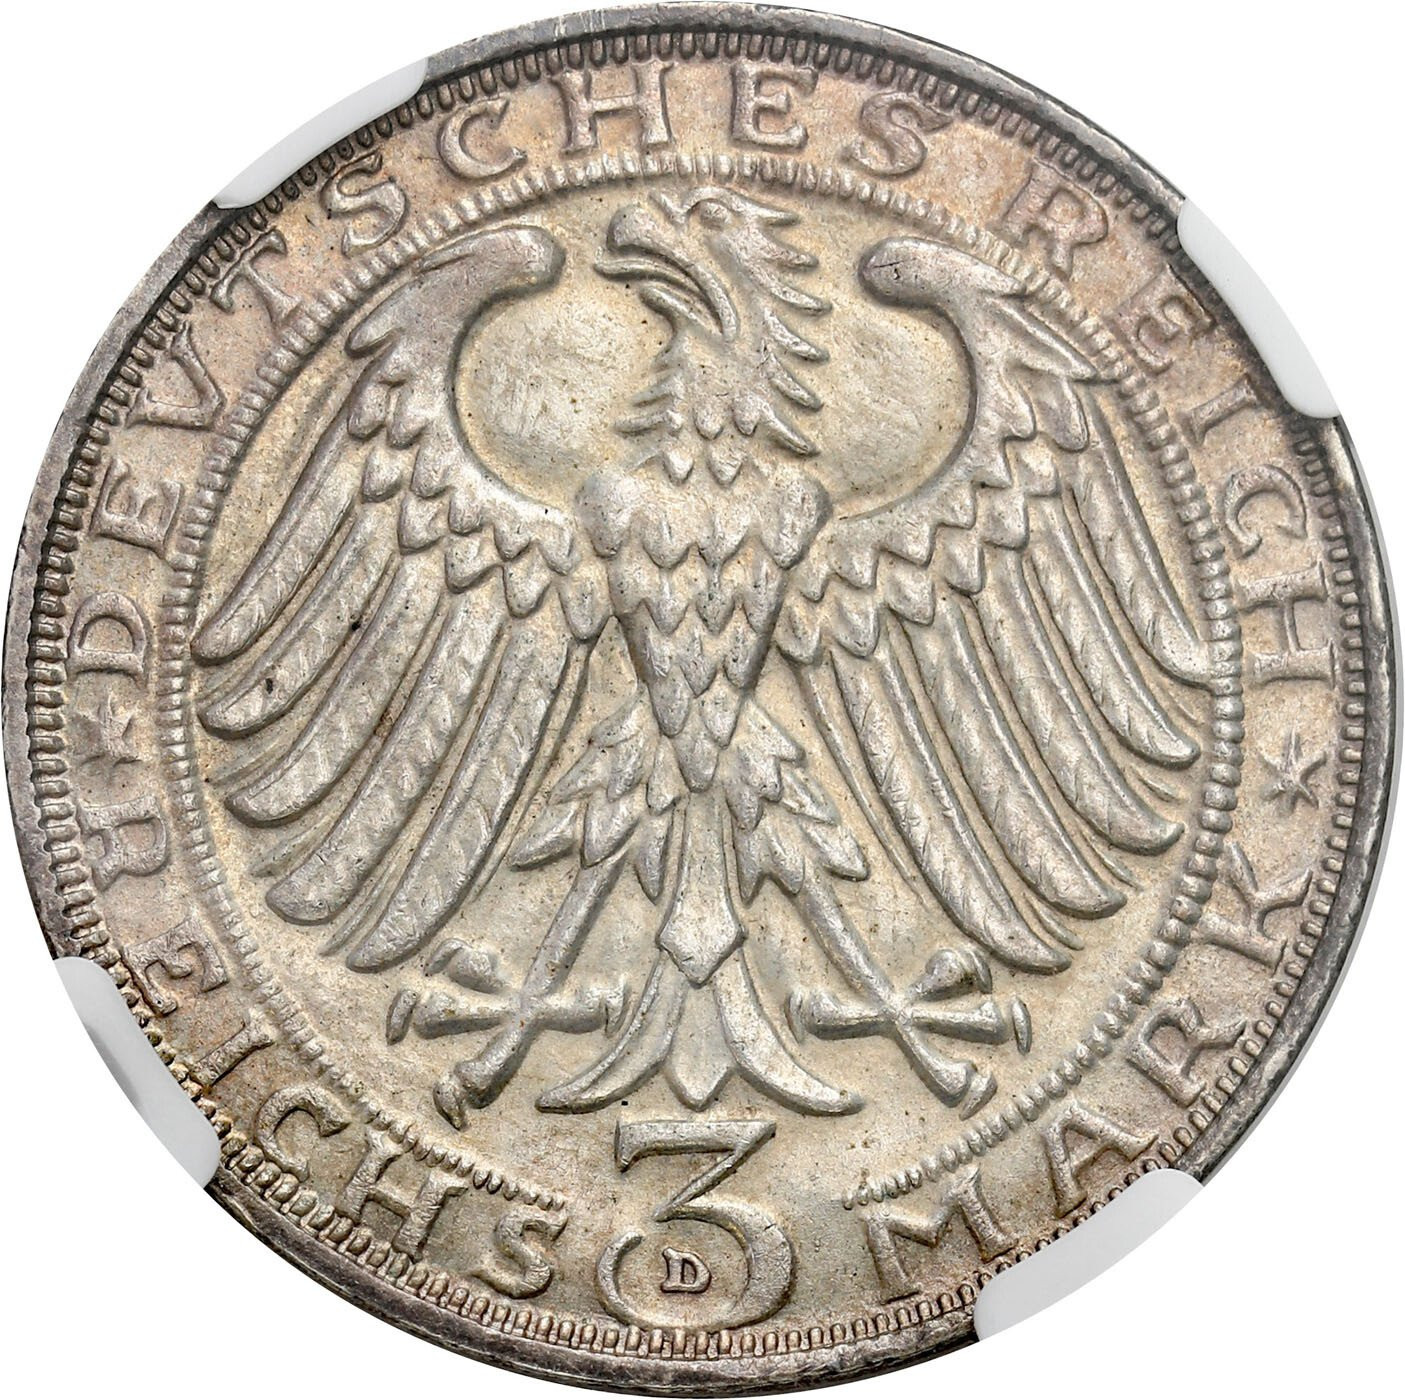 Niemcy, Weimar. 3 Marki 1928 D, Monachium NGC MS62 - PIĘKNE i RZADKIE